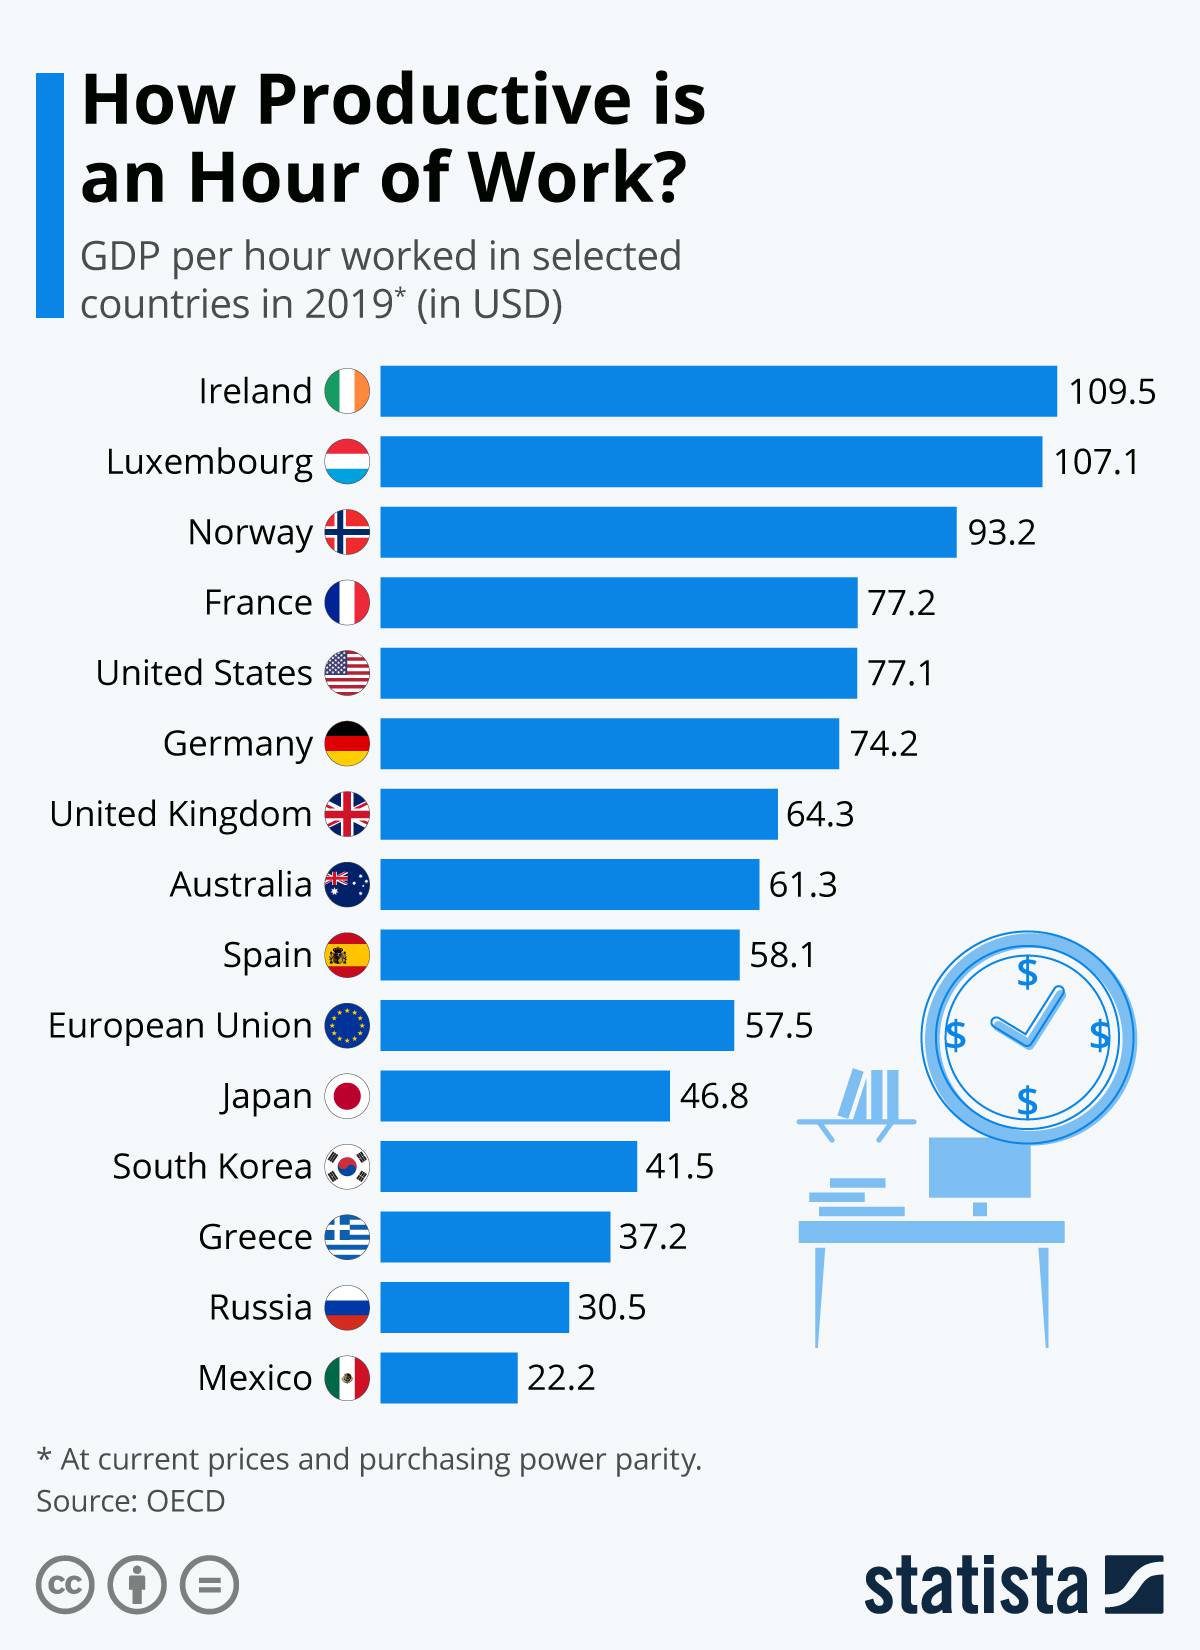 یک ساعت کار در کشورهای مختلف چقدر بازدهی دارد؟